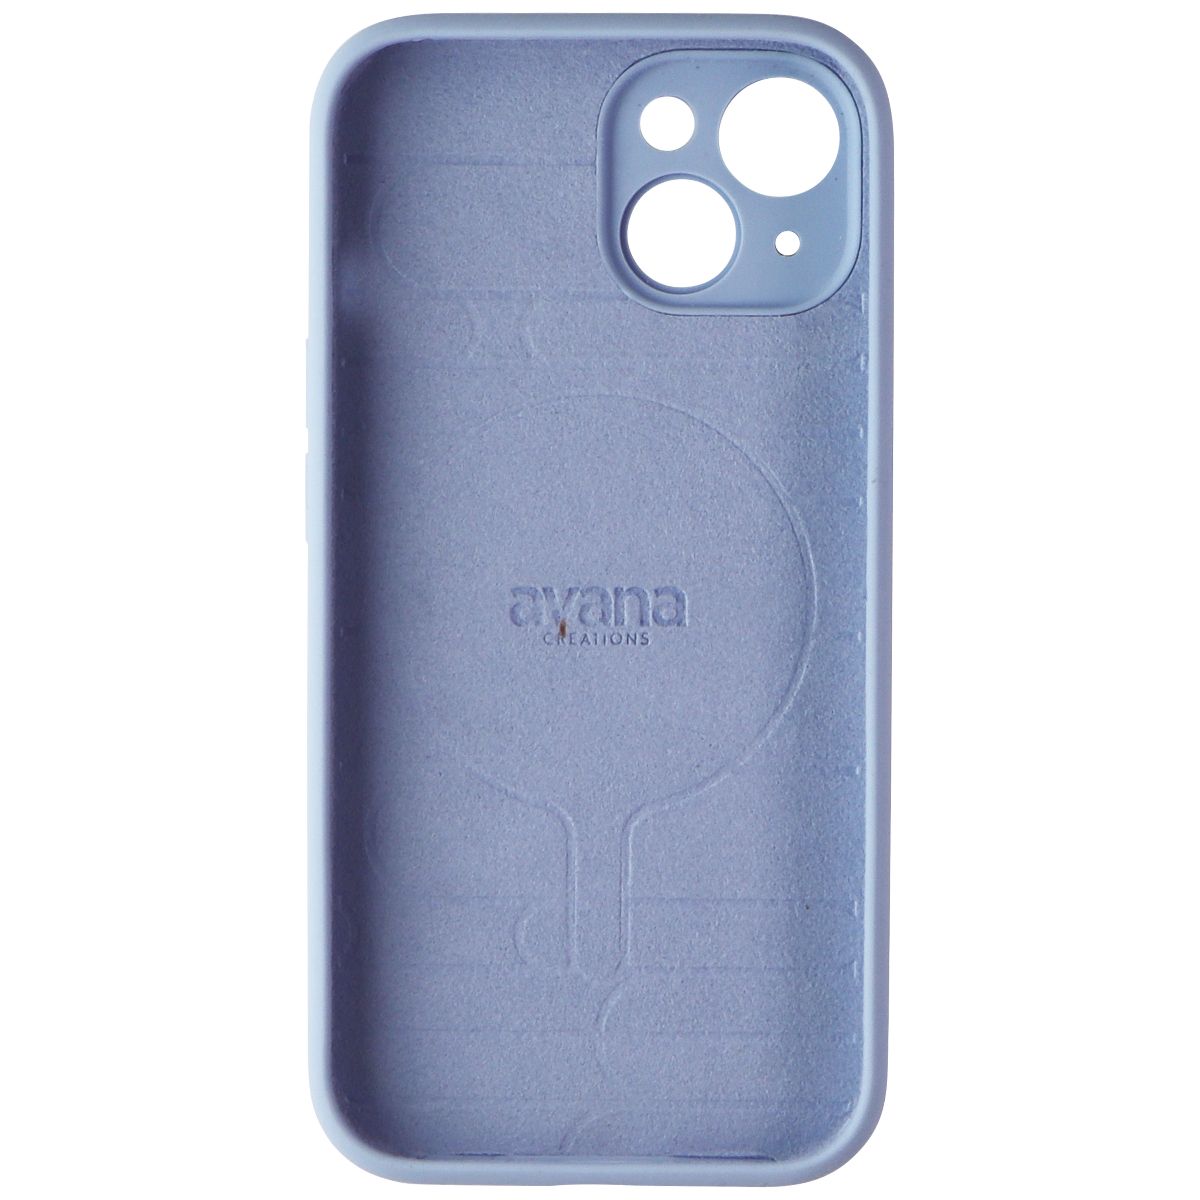 Avana Velvet Sky Series Case for MagSafe for iPhone 15 - Sky Blue